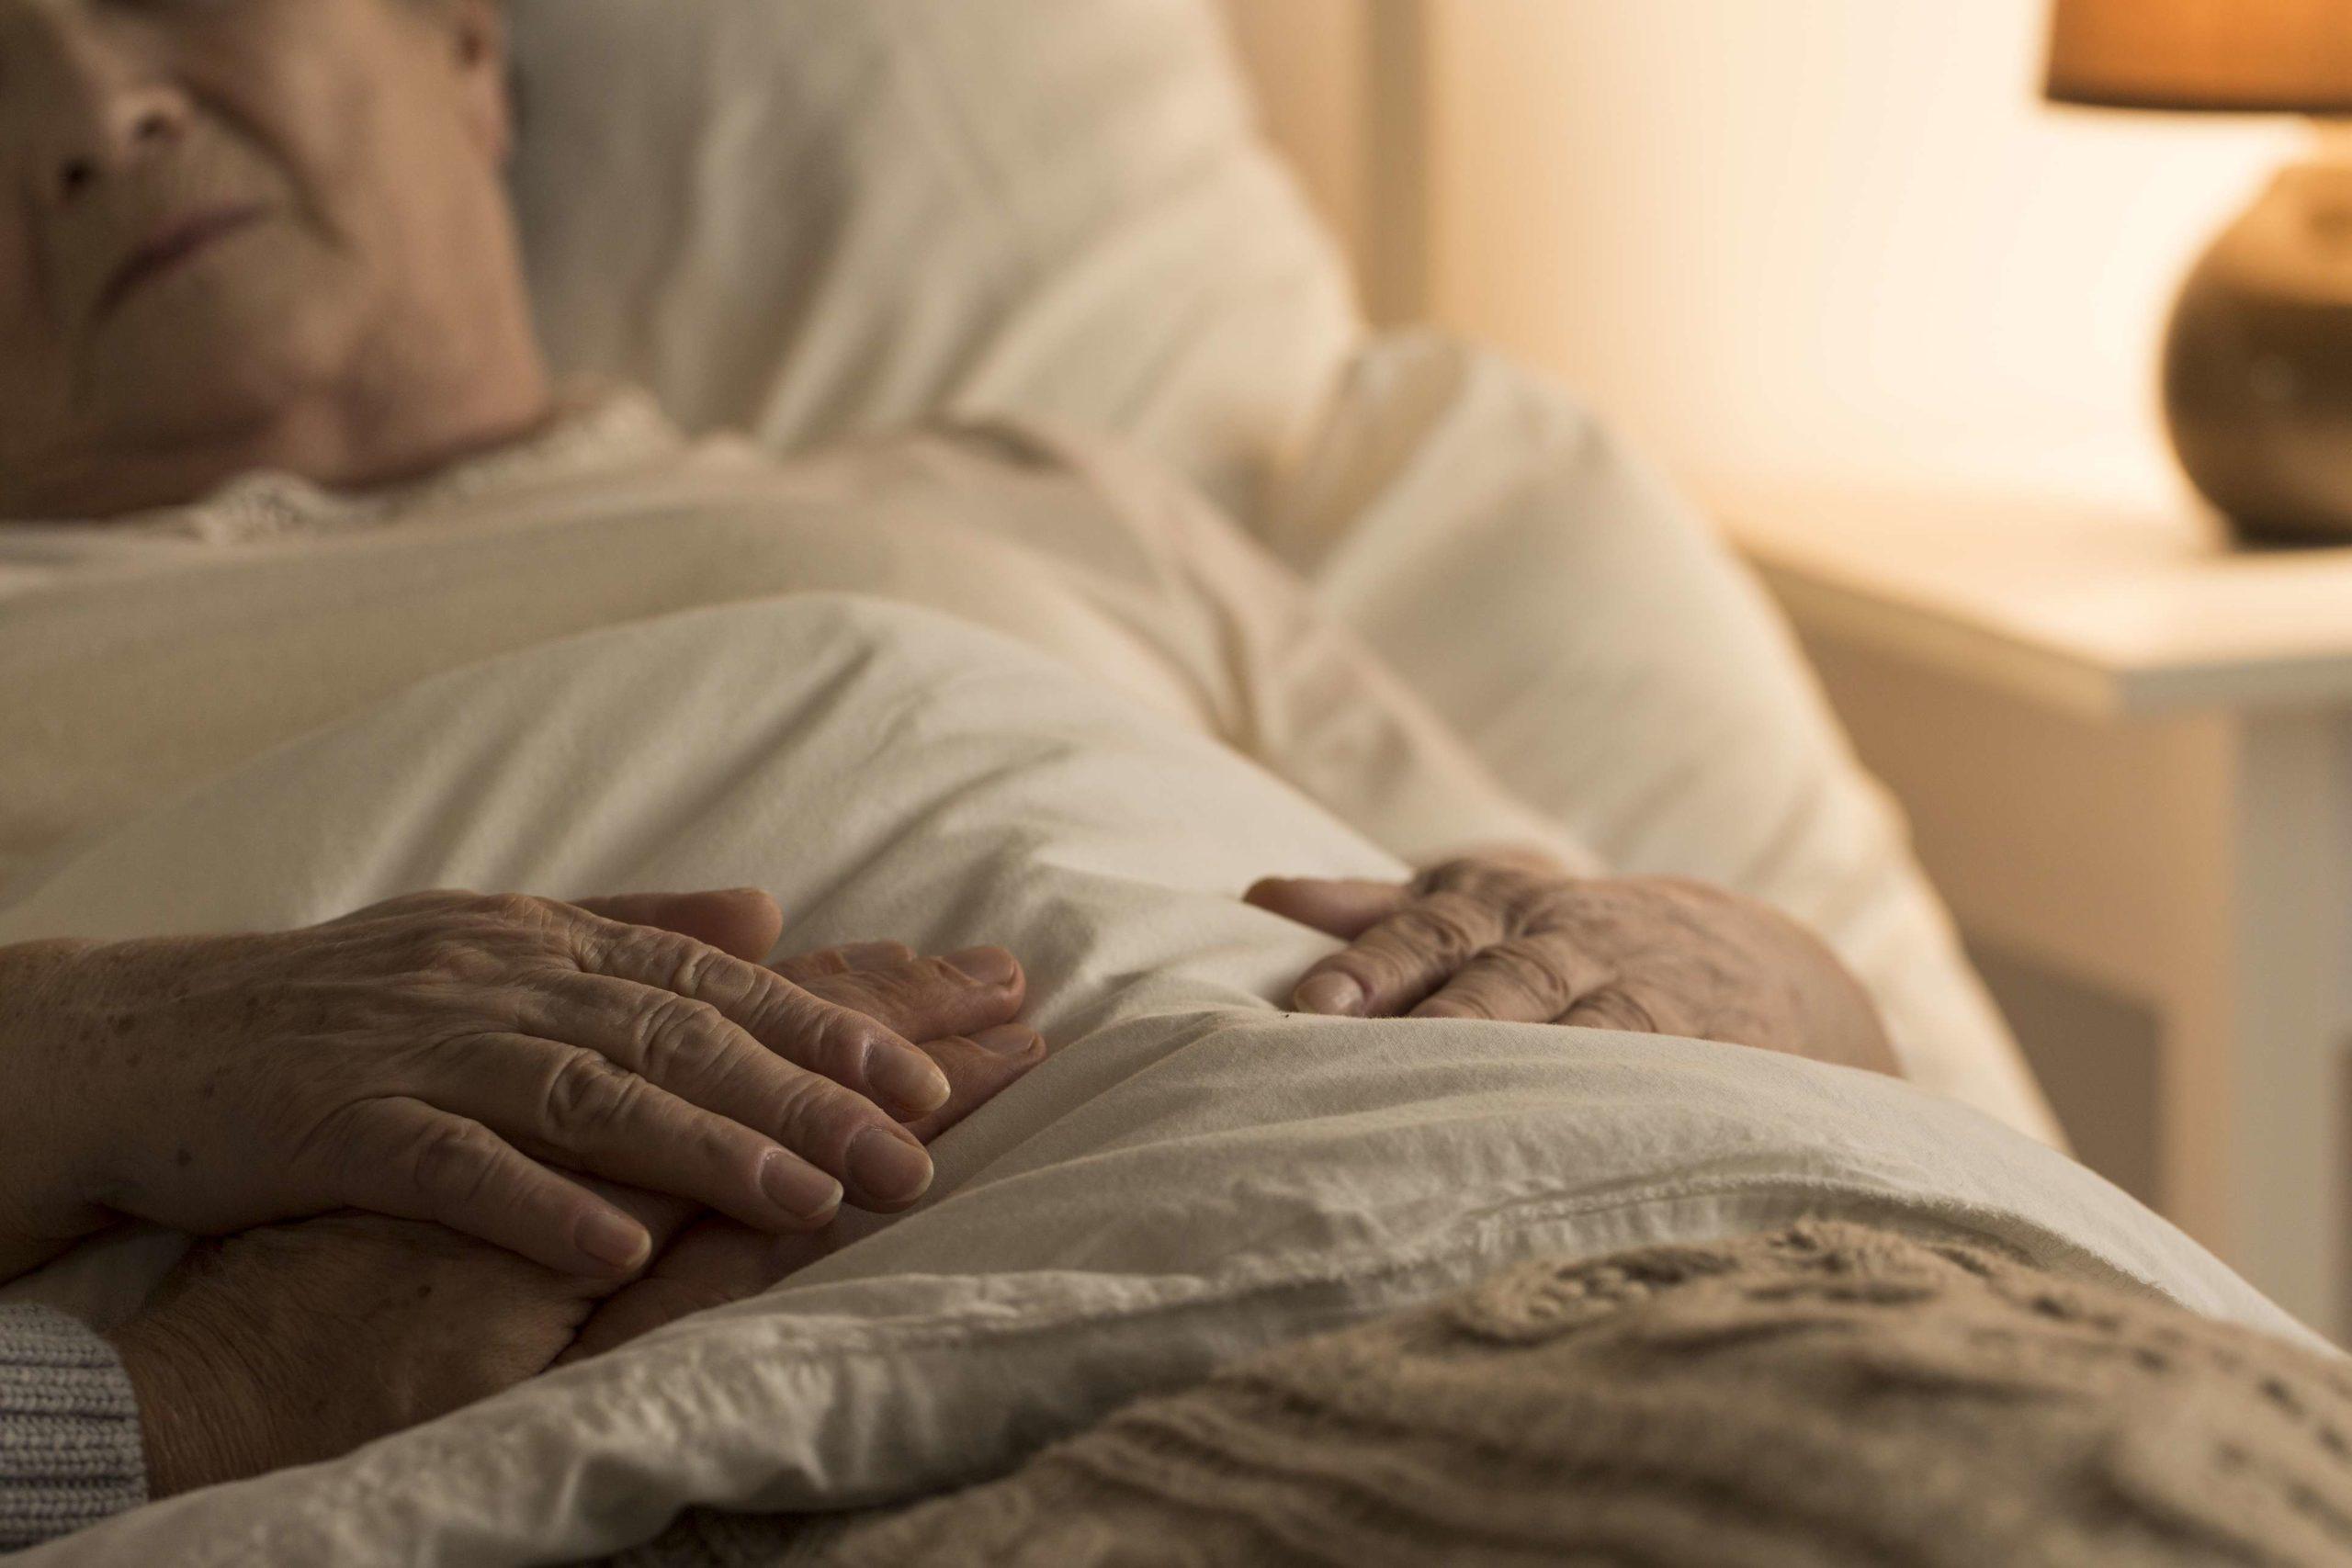 Nahaufnahme der Hand des Senioren auf der Hand der sterbenden älteren Person als Zeichen der Unterstützung während der Krankheit